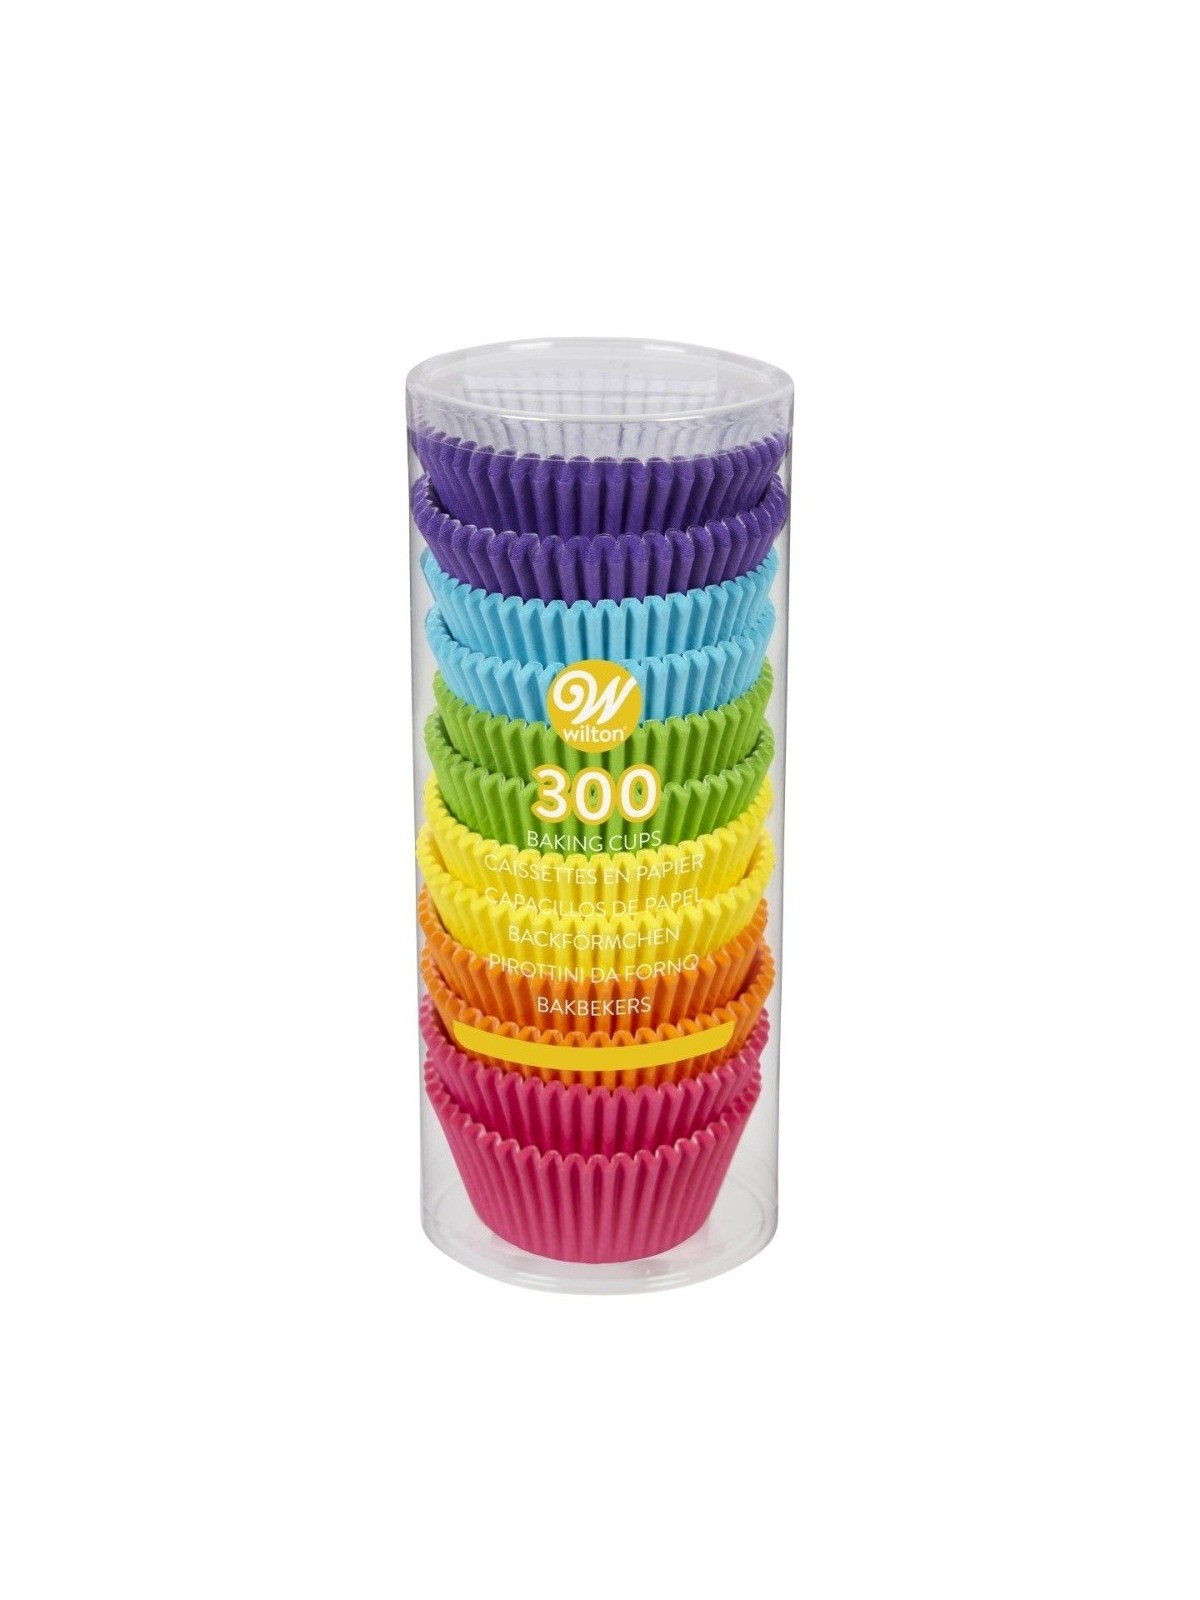 Wilton Baking cups - rainbow colors - 300 pcs